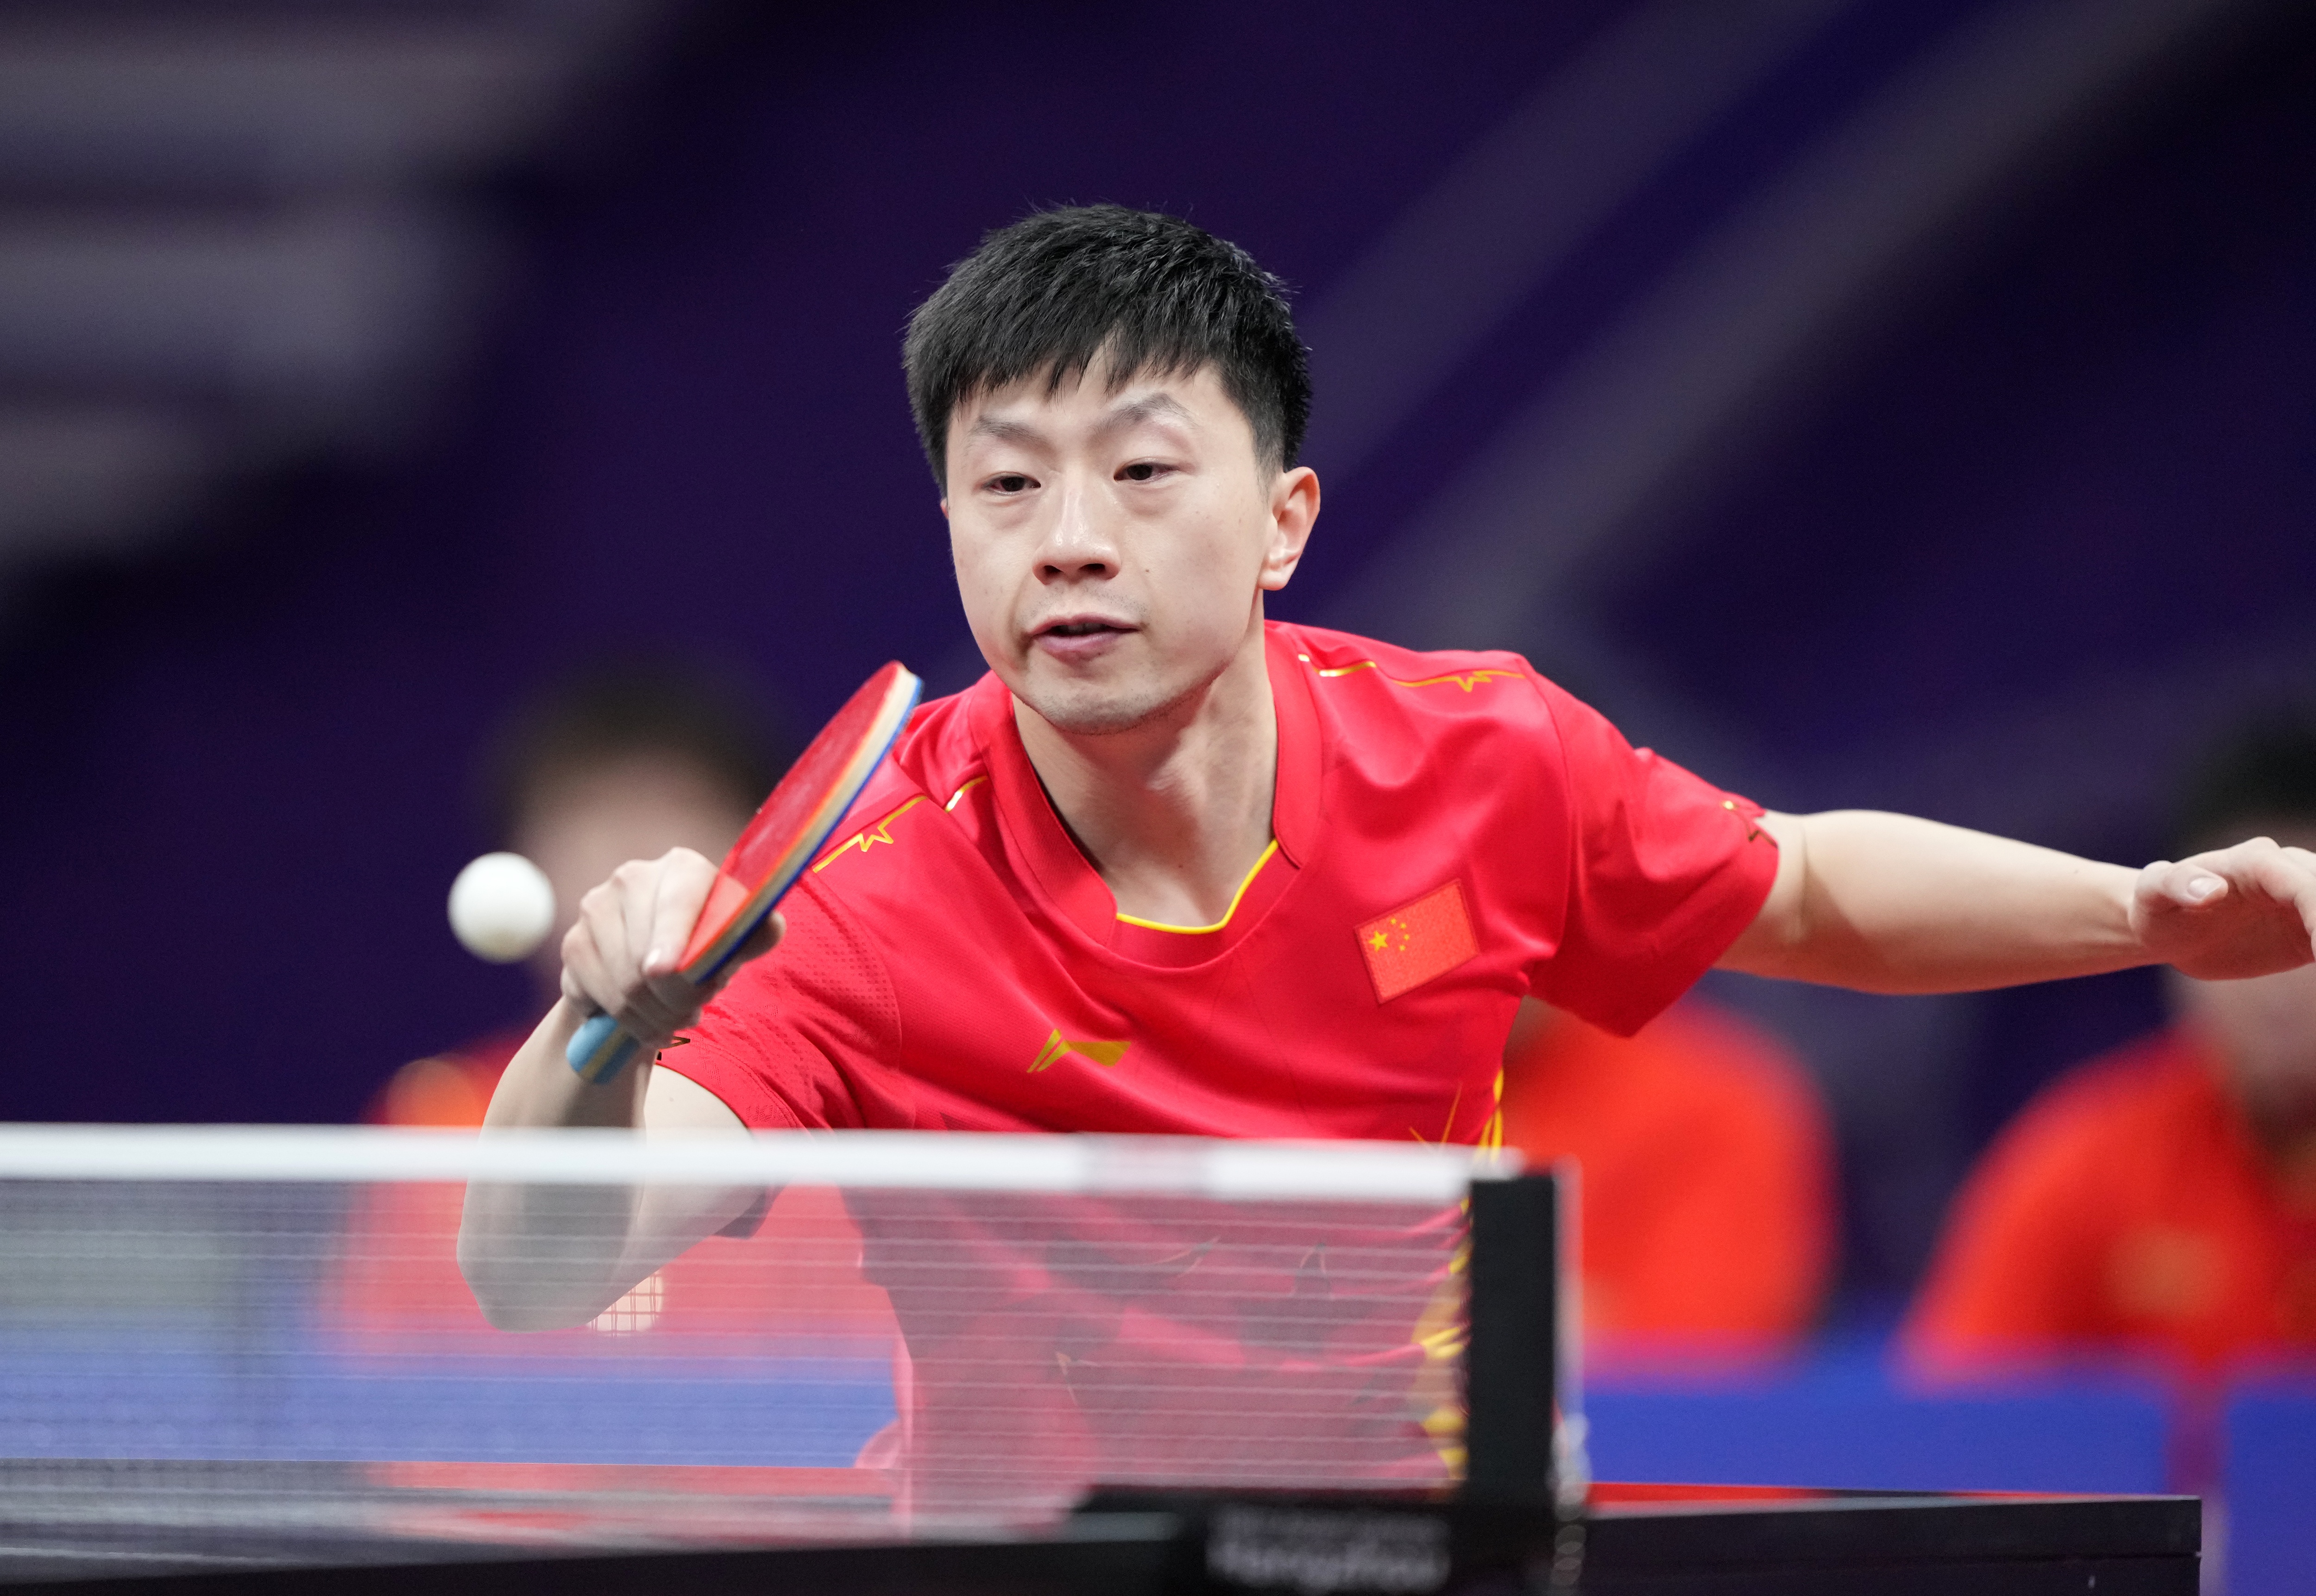 国际奥委会对马龙入选奥运名单表示关注 称他是奥运乒乓球史上最成功的运动员